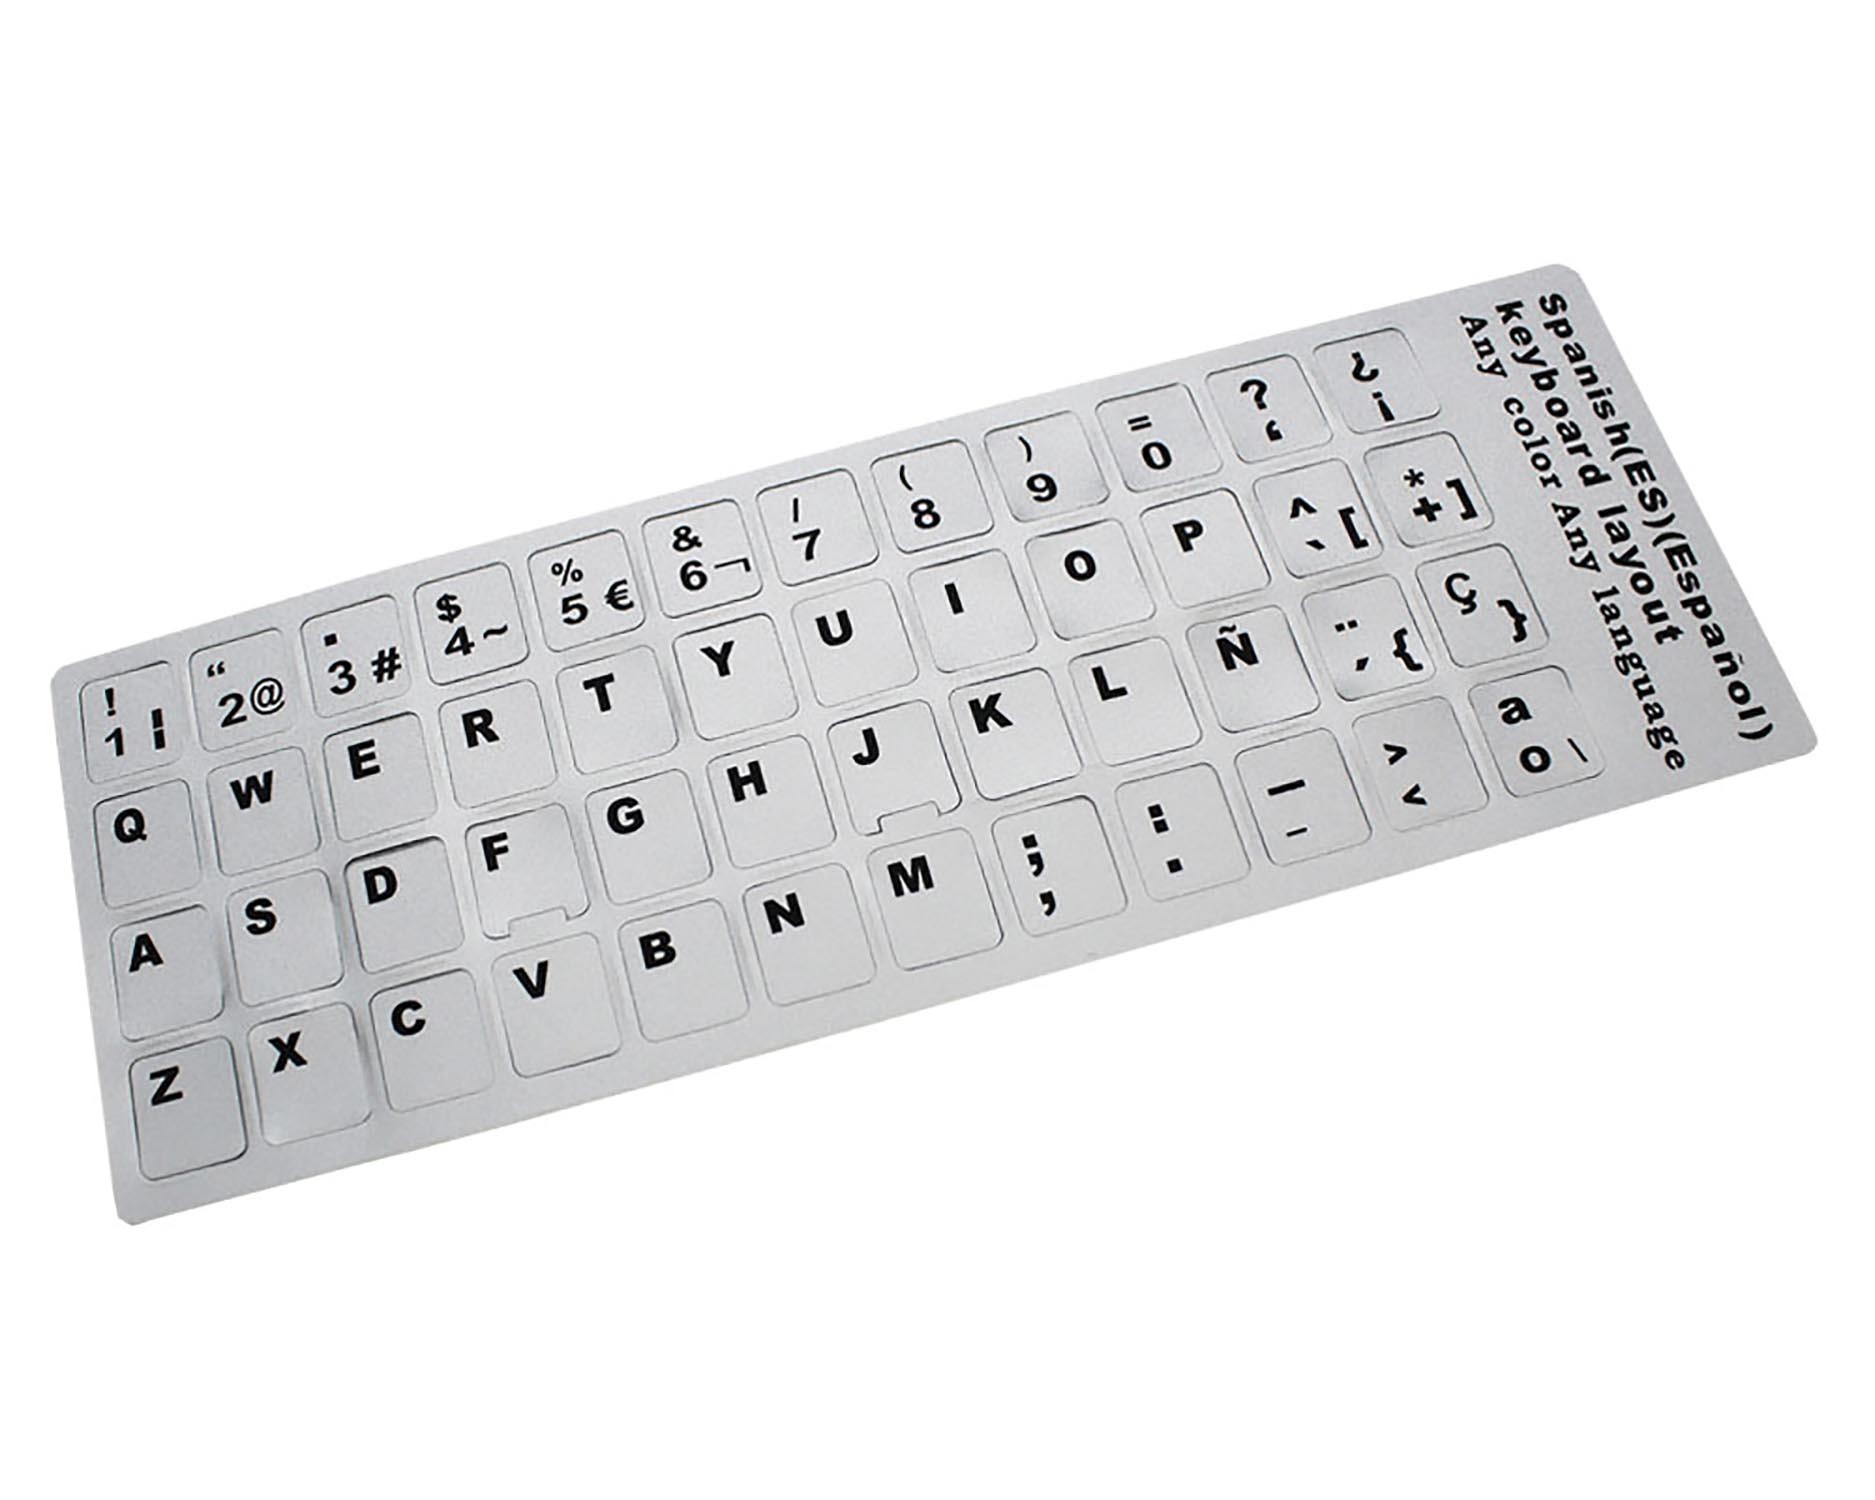 Pegatina para teclado SP plateado con letras negras